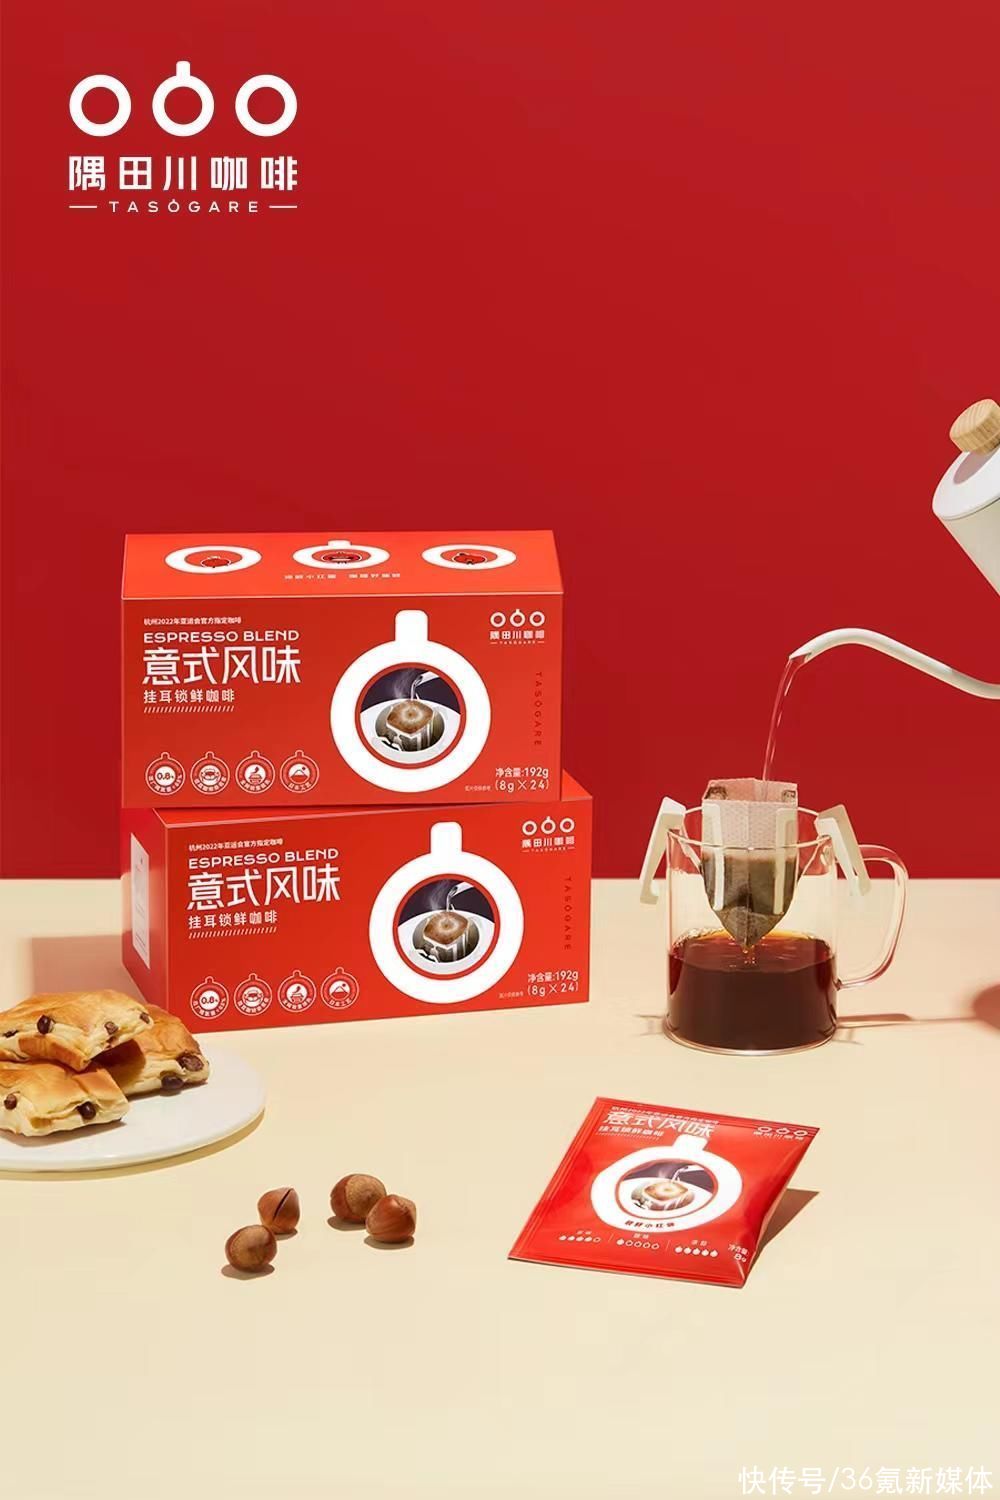 36氪独家 | 零售咖啡品牌「隅田川咖啡」获数亿元C轮融资